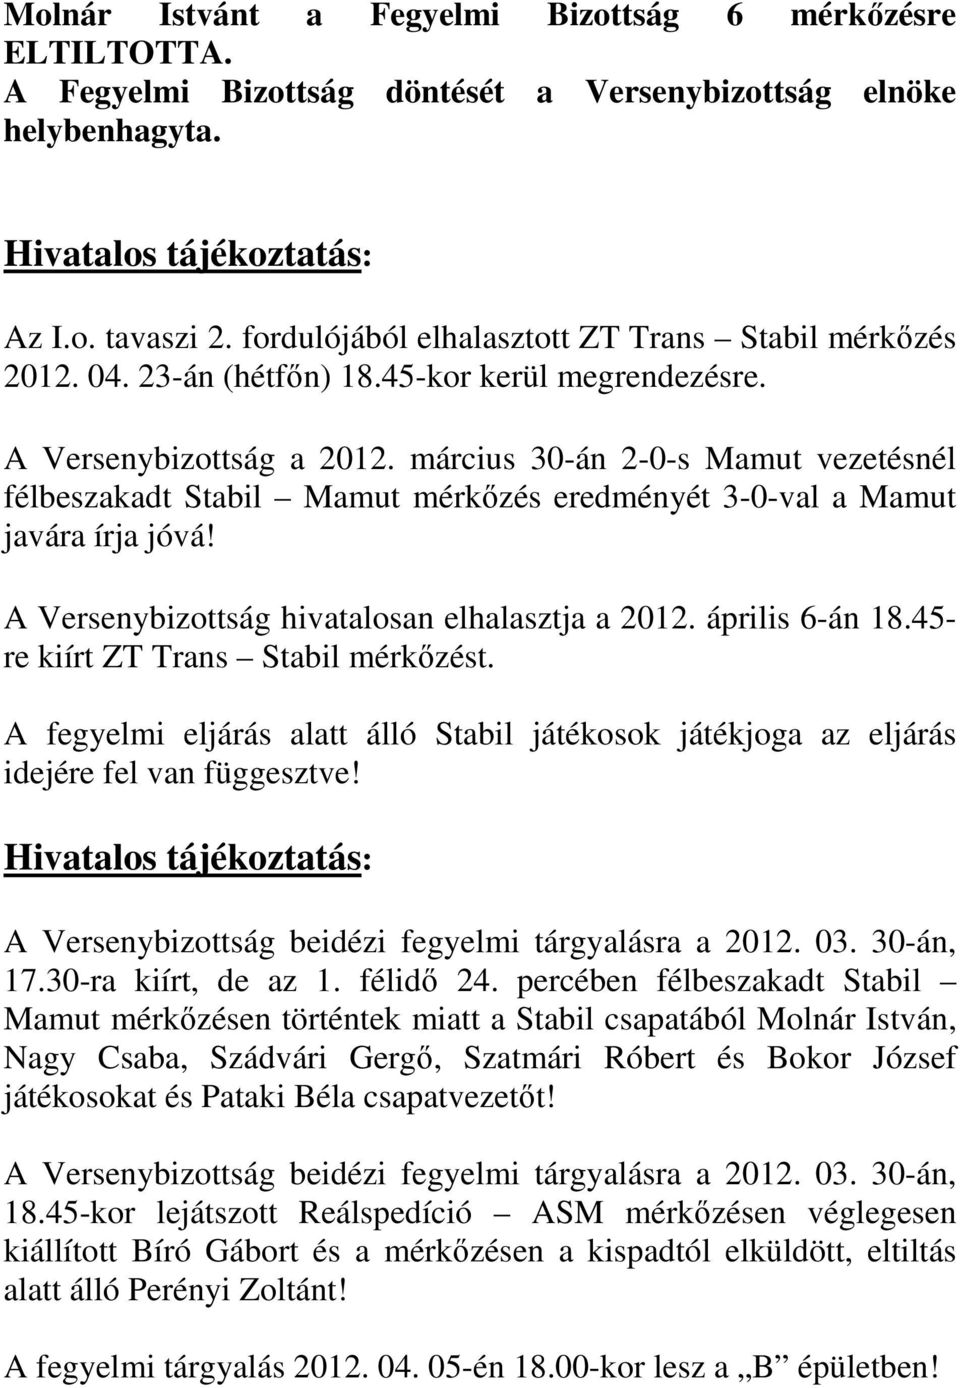 március 30-án 2-0-s Mamut vezetésnél félbeszakadt Stabil Mamut mérkőzés eredményét 3-0-val a Mamut javára írja jóvá! A Versenybizottság hivatalosan elhalasztja a 2012. április 6-án 18.